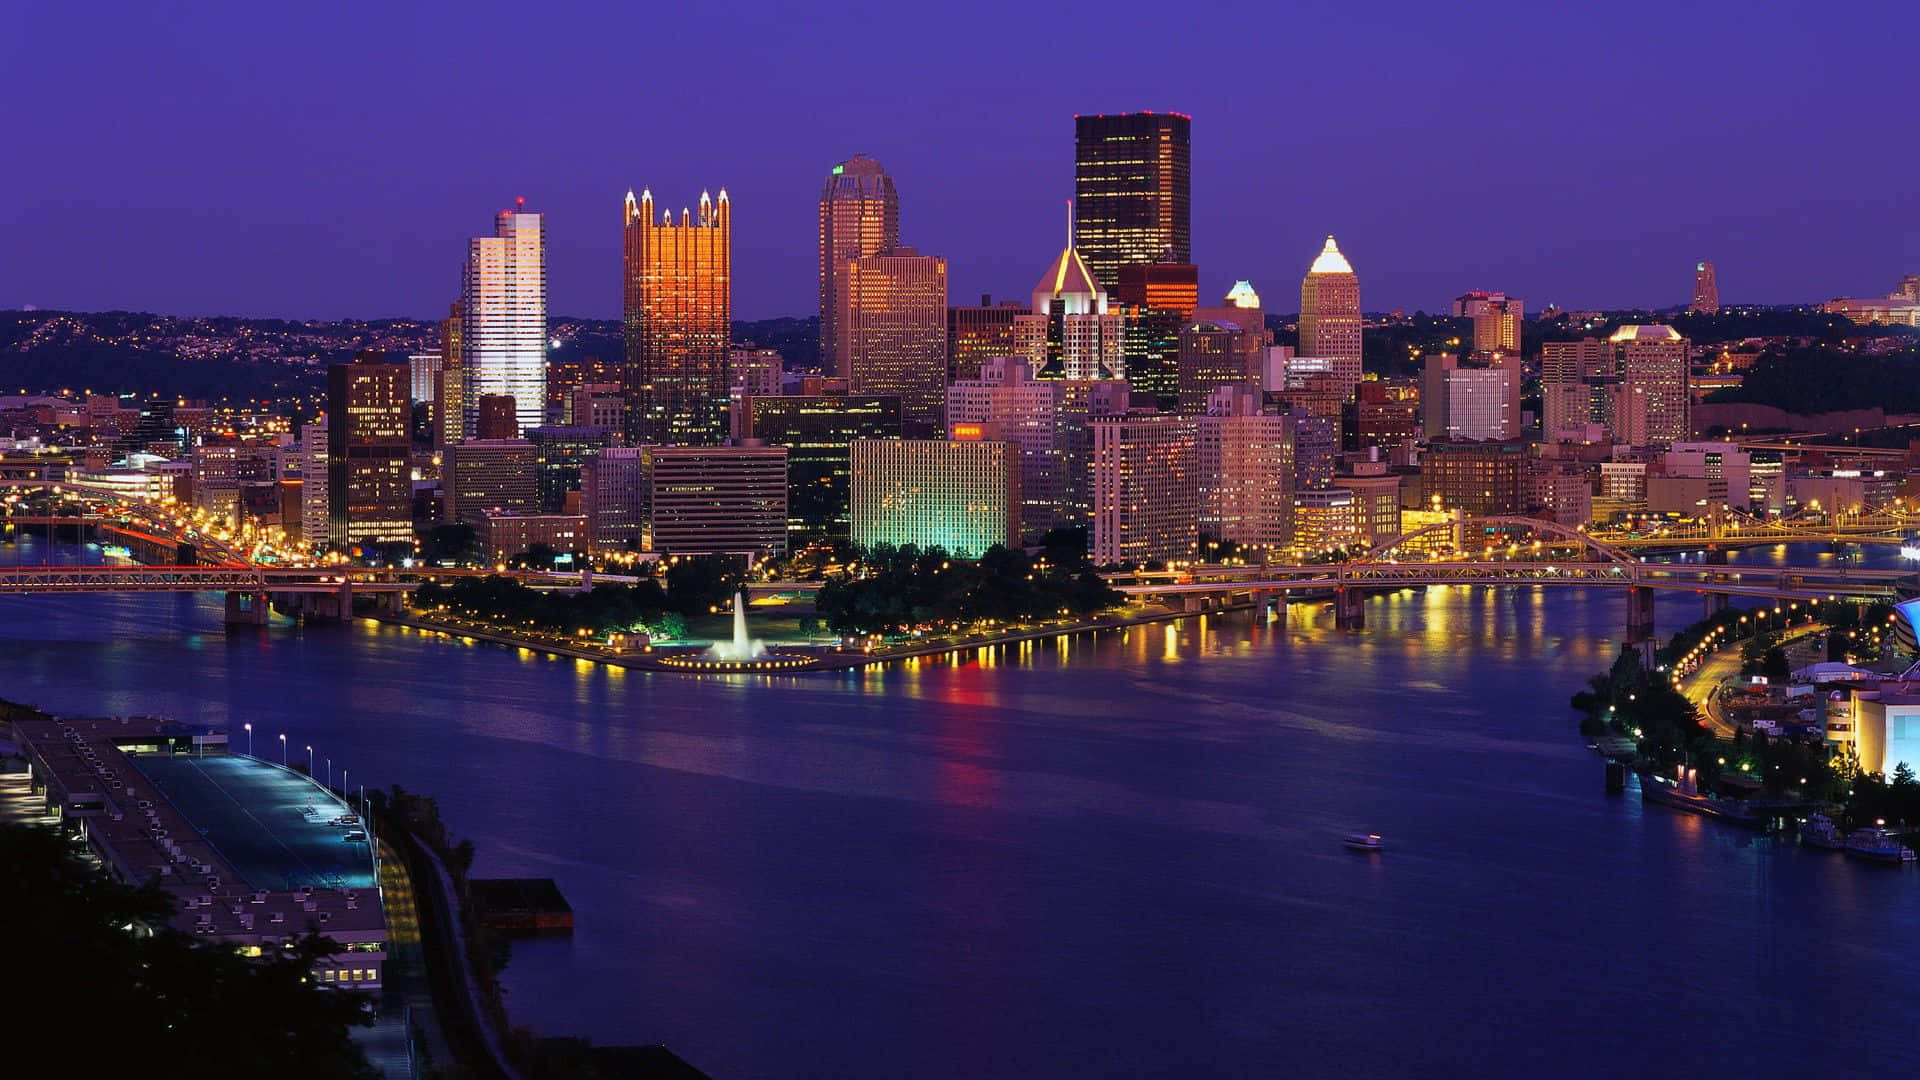 Impresionantehorizonte De Pittsburgh Al Anochecer. Fondo de pantalla